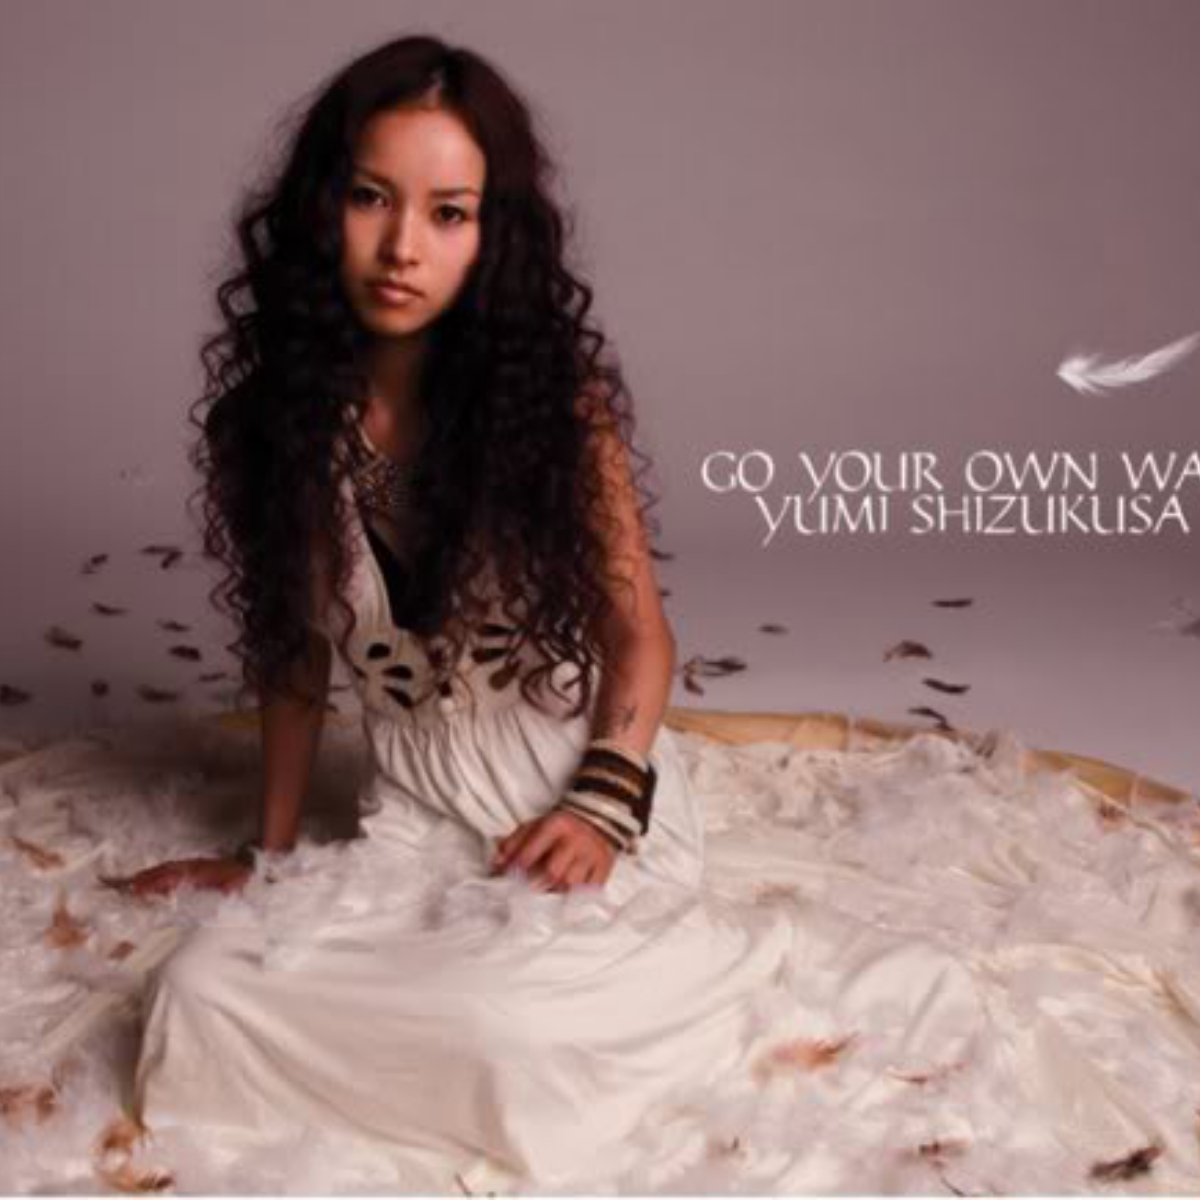 Yumi Shizukusa - Go Your Own Way